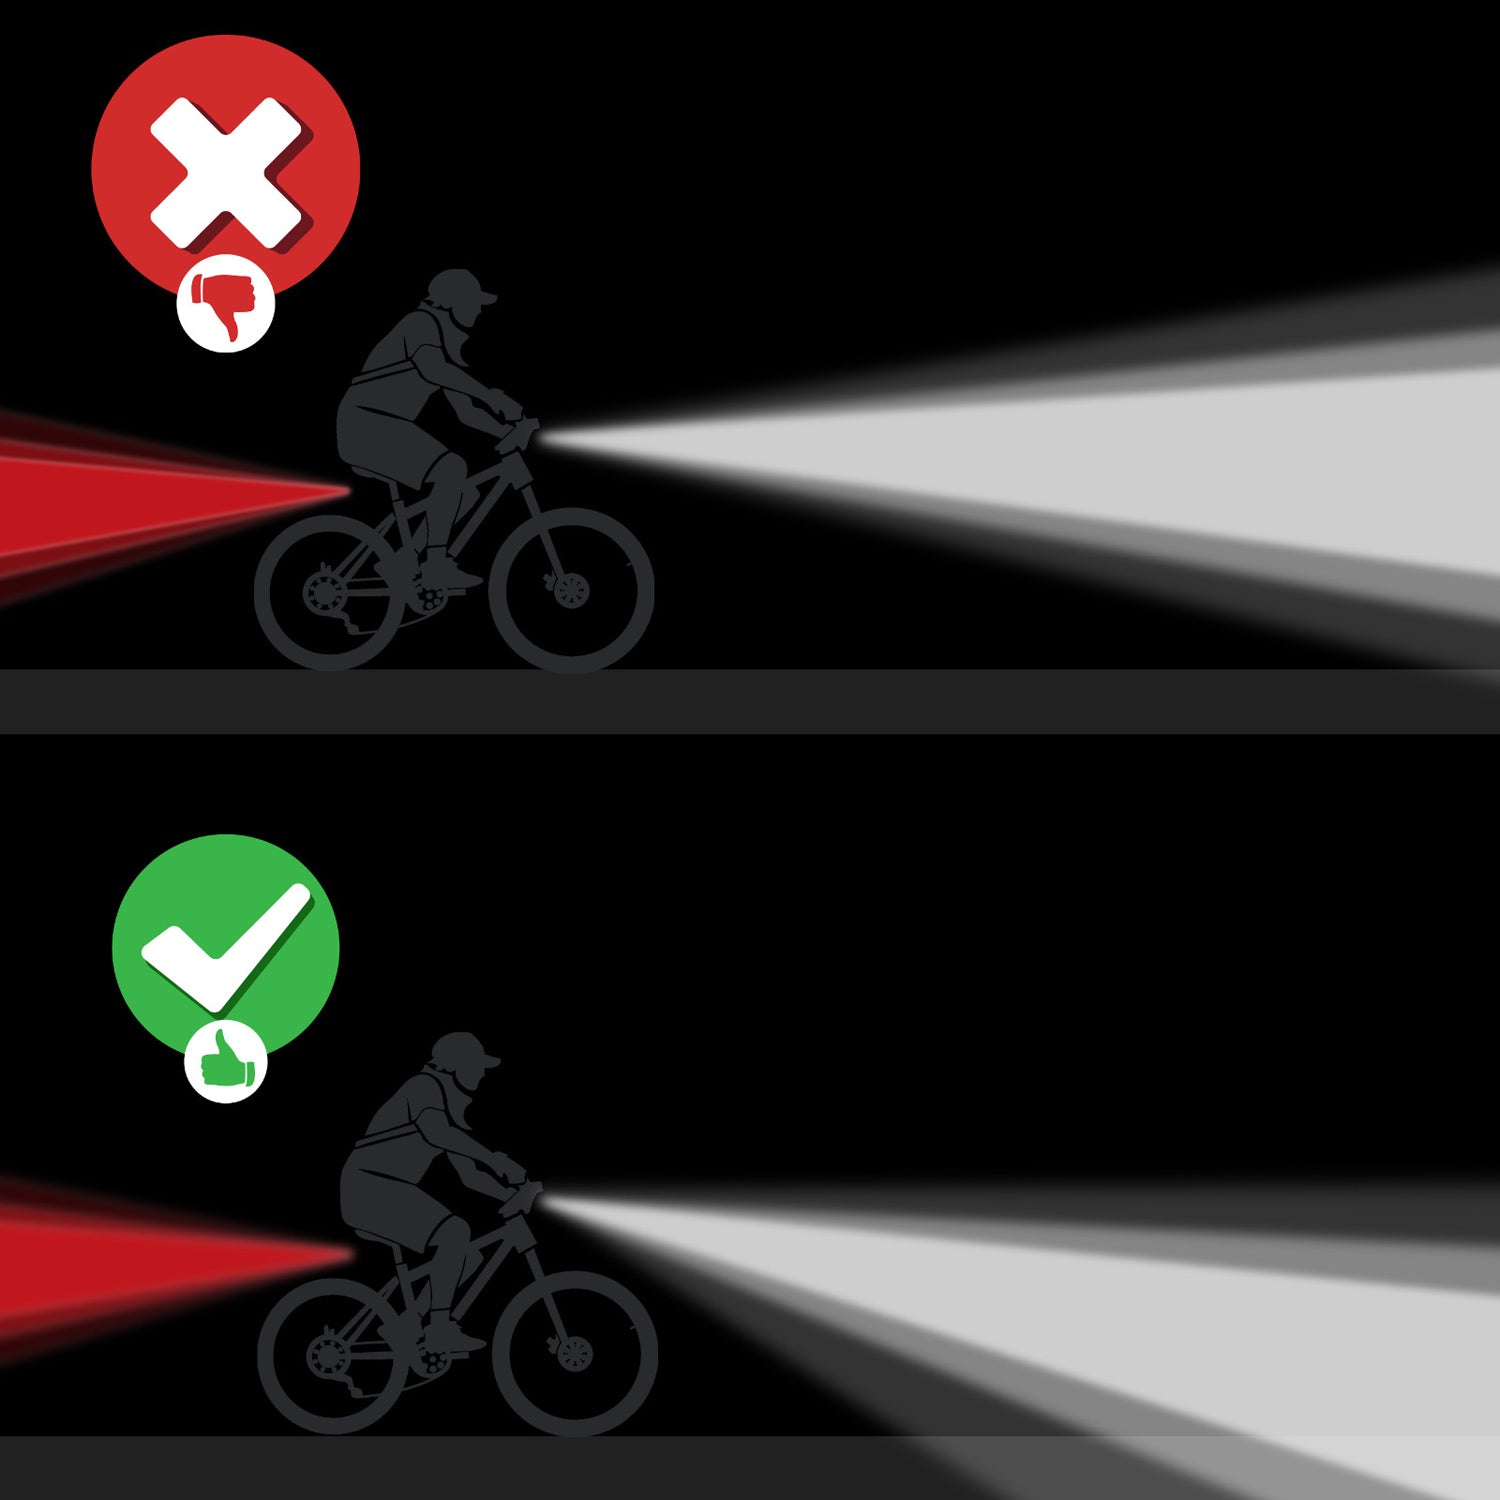 Licorne Bike Fahrrad Batterieleuchtenset StVZO Beleuchtungsset Fahrradbeleuchtung Vorderlampe Hinterlampe LED Fahrradlicht inklusive Batterien.